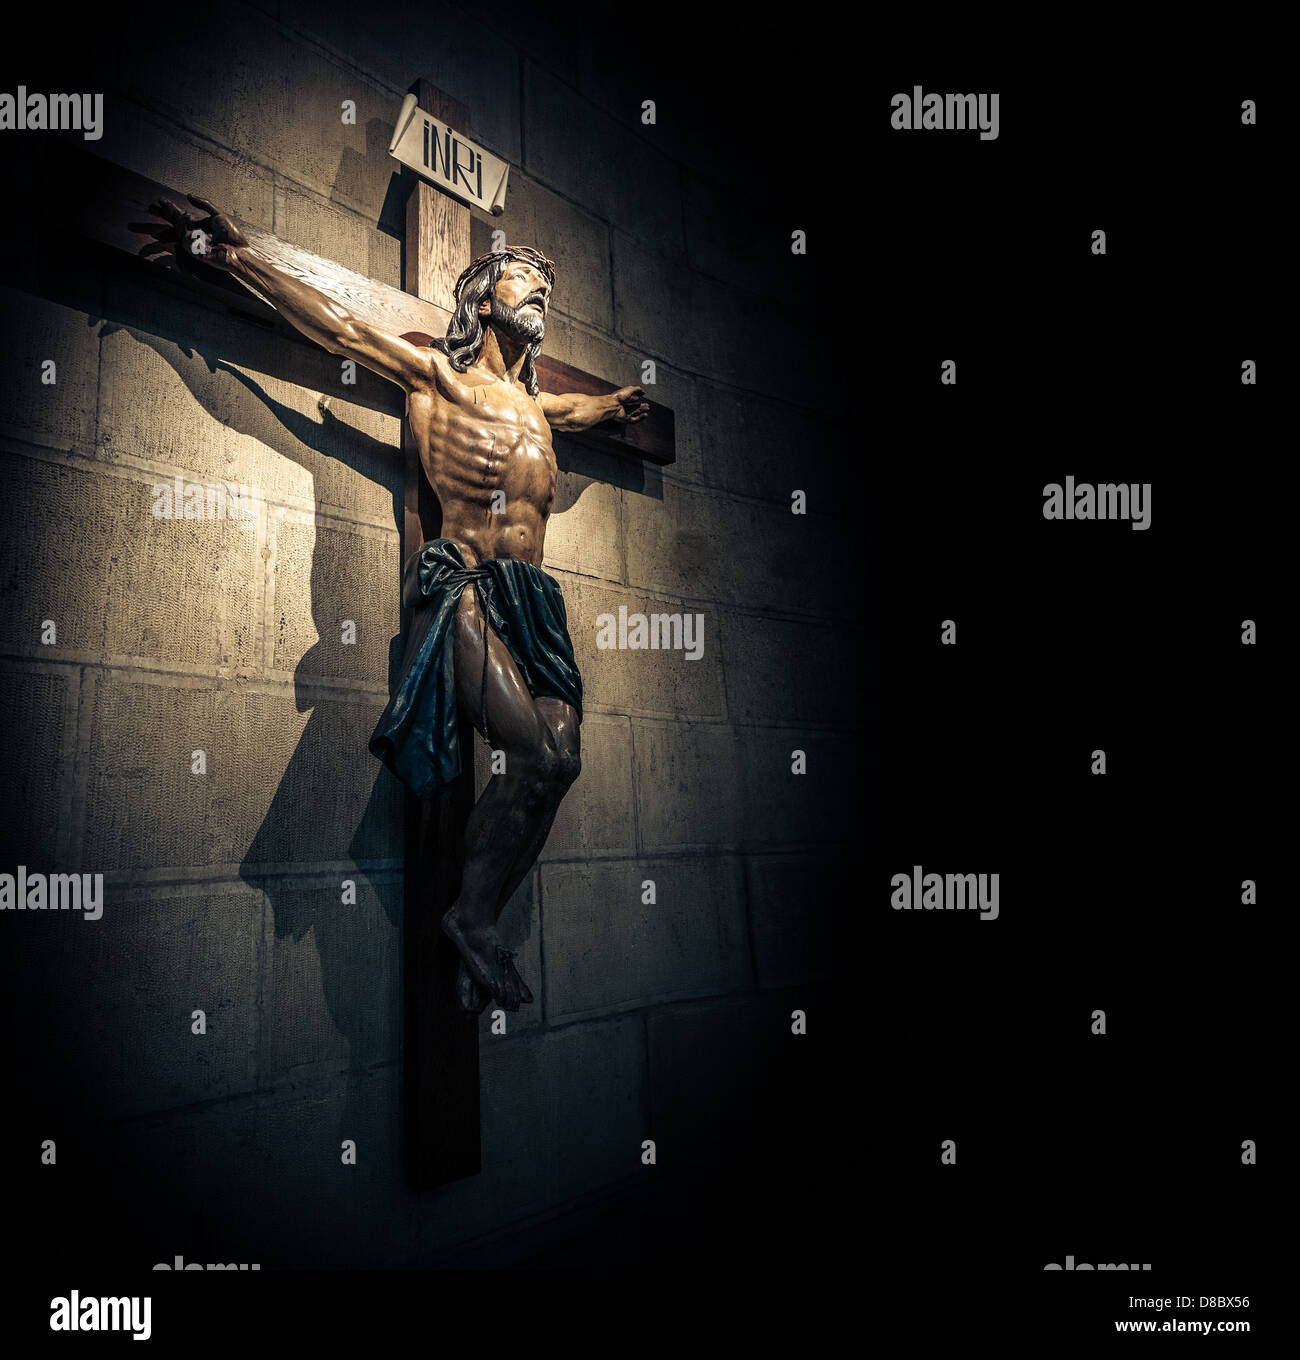 Kruzifix an der Wand im Rampenlicht in alten dunklen Kirche oder Kathedrale. Jesus Christus am Kreuz. Religion, glaube und Hoffnung. Stockfoto